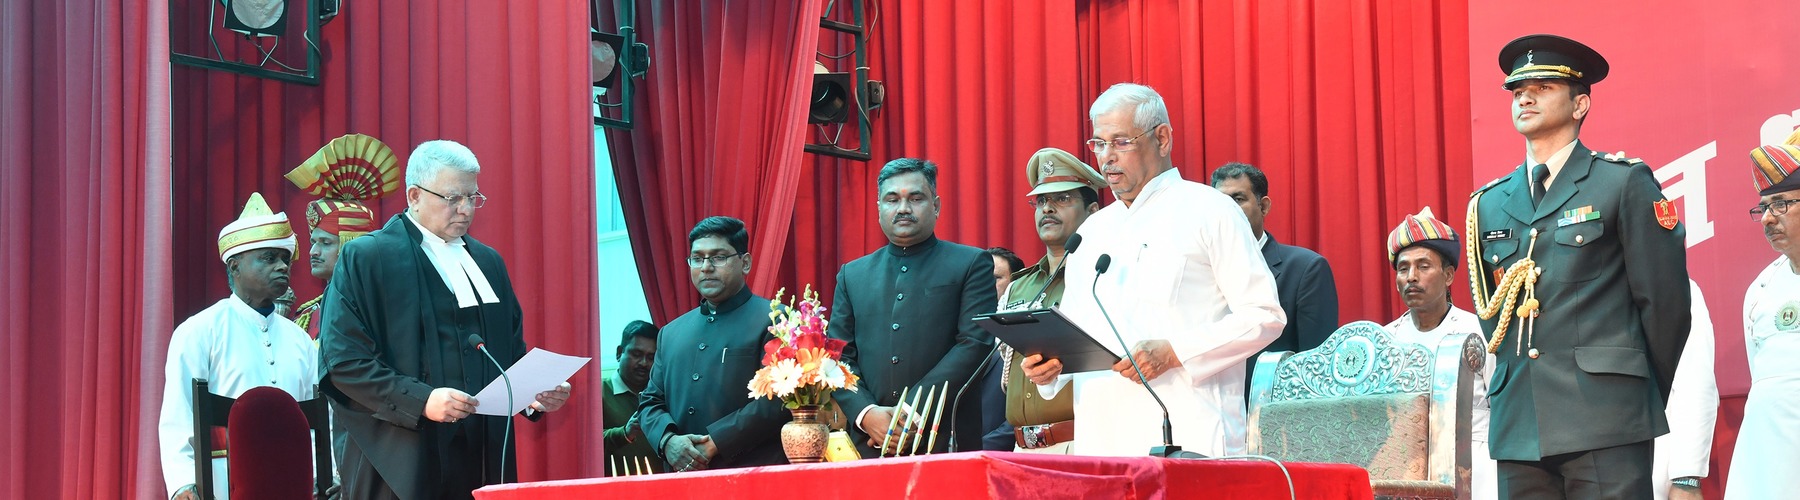 श्री राजेन्द्र विश्वनाथ अर्लेकर ने दिनांक 17-02-2023 को बिहार के राज्यपाल पद की शपथ ली।